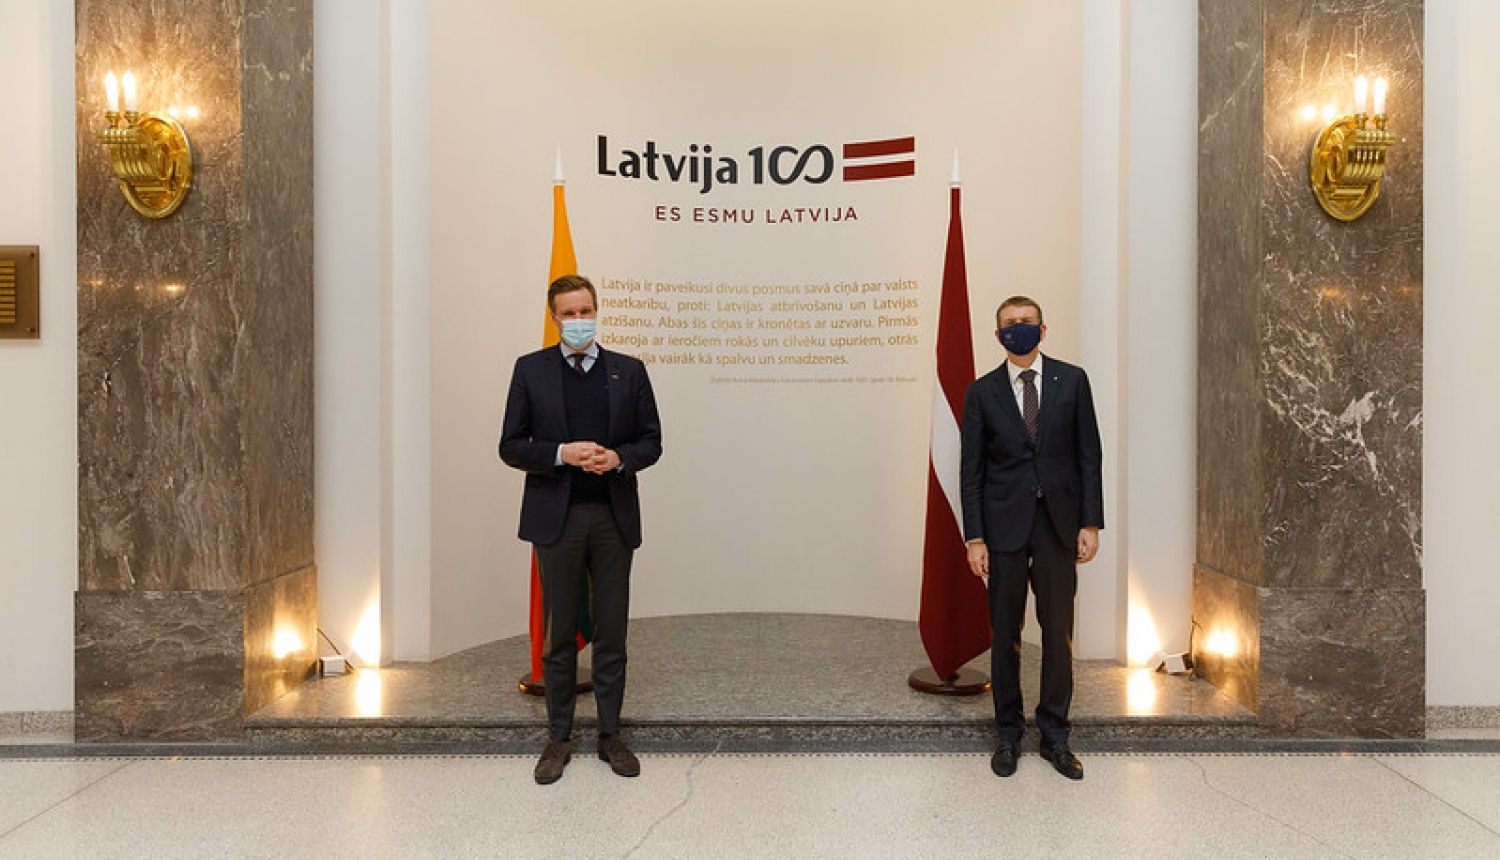 Latvijas un Lietuvas ārlietu ministri turpinās vienotu nostāju par situāciju Baltkrievijā un Krievijā